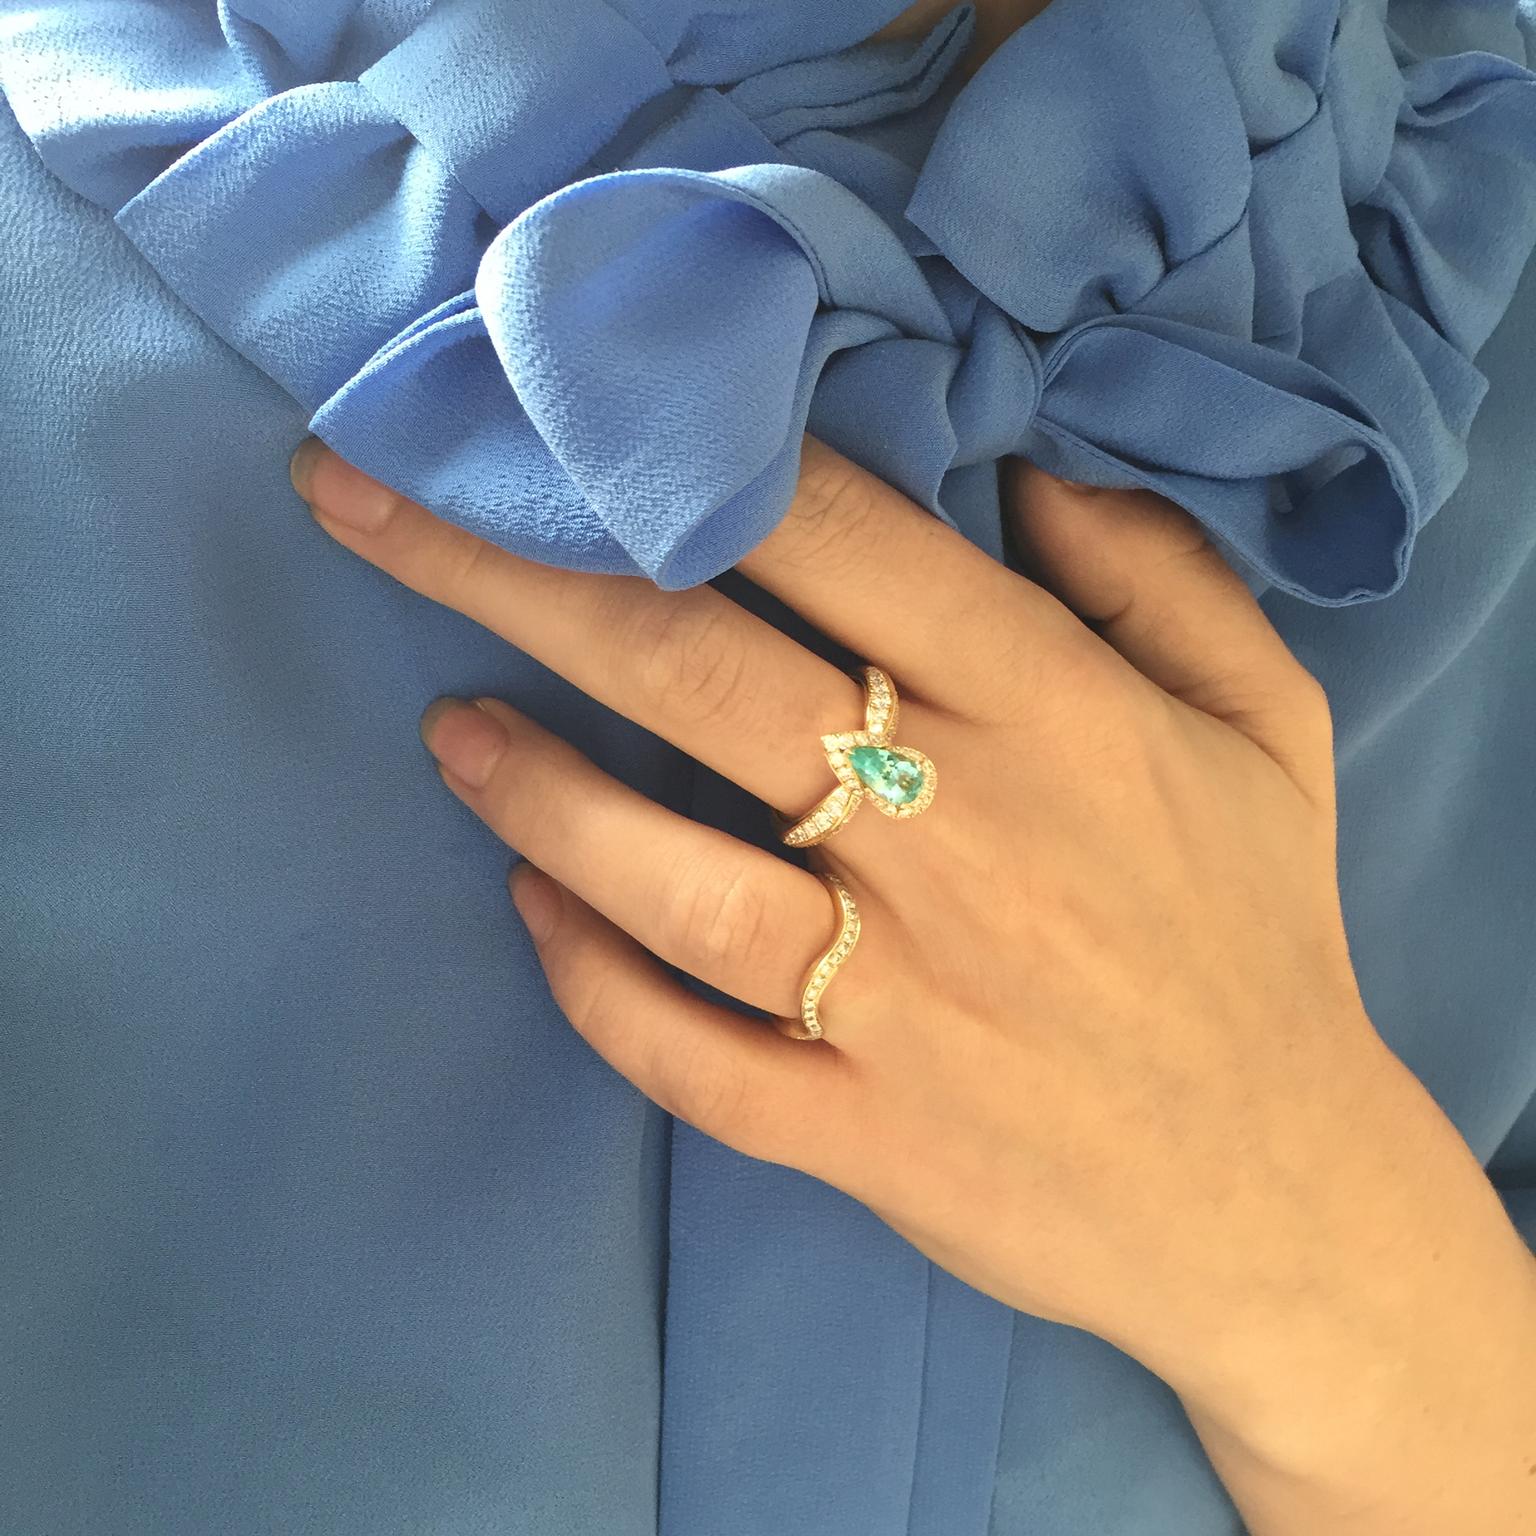 Rachael Taylor wearing Kat Florence Paraiba tourmaline ring